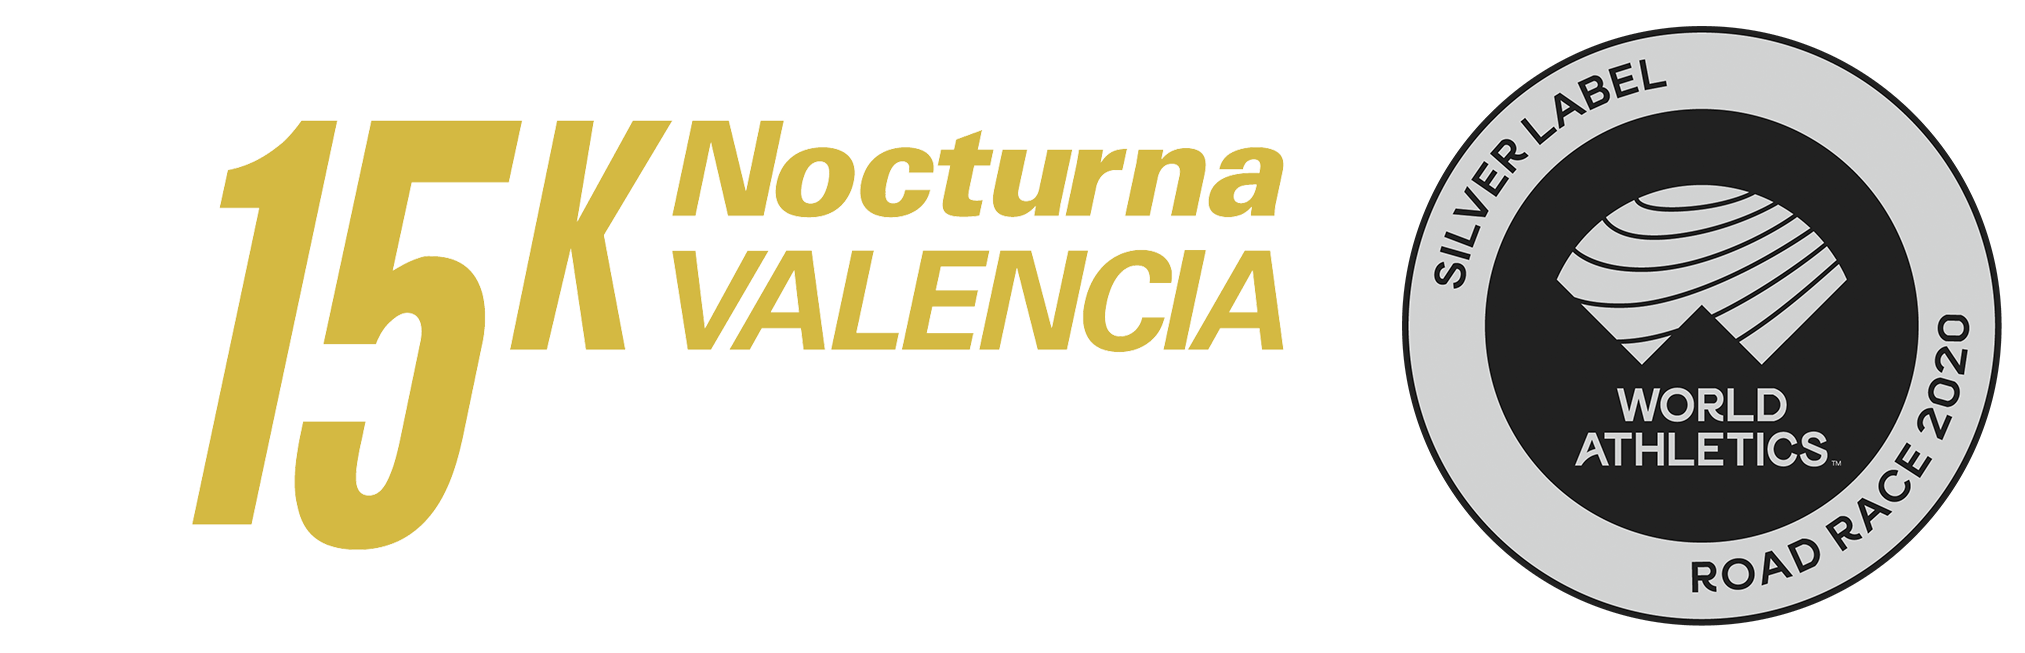 15K Notturna di Valencia IX edizione